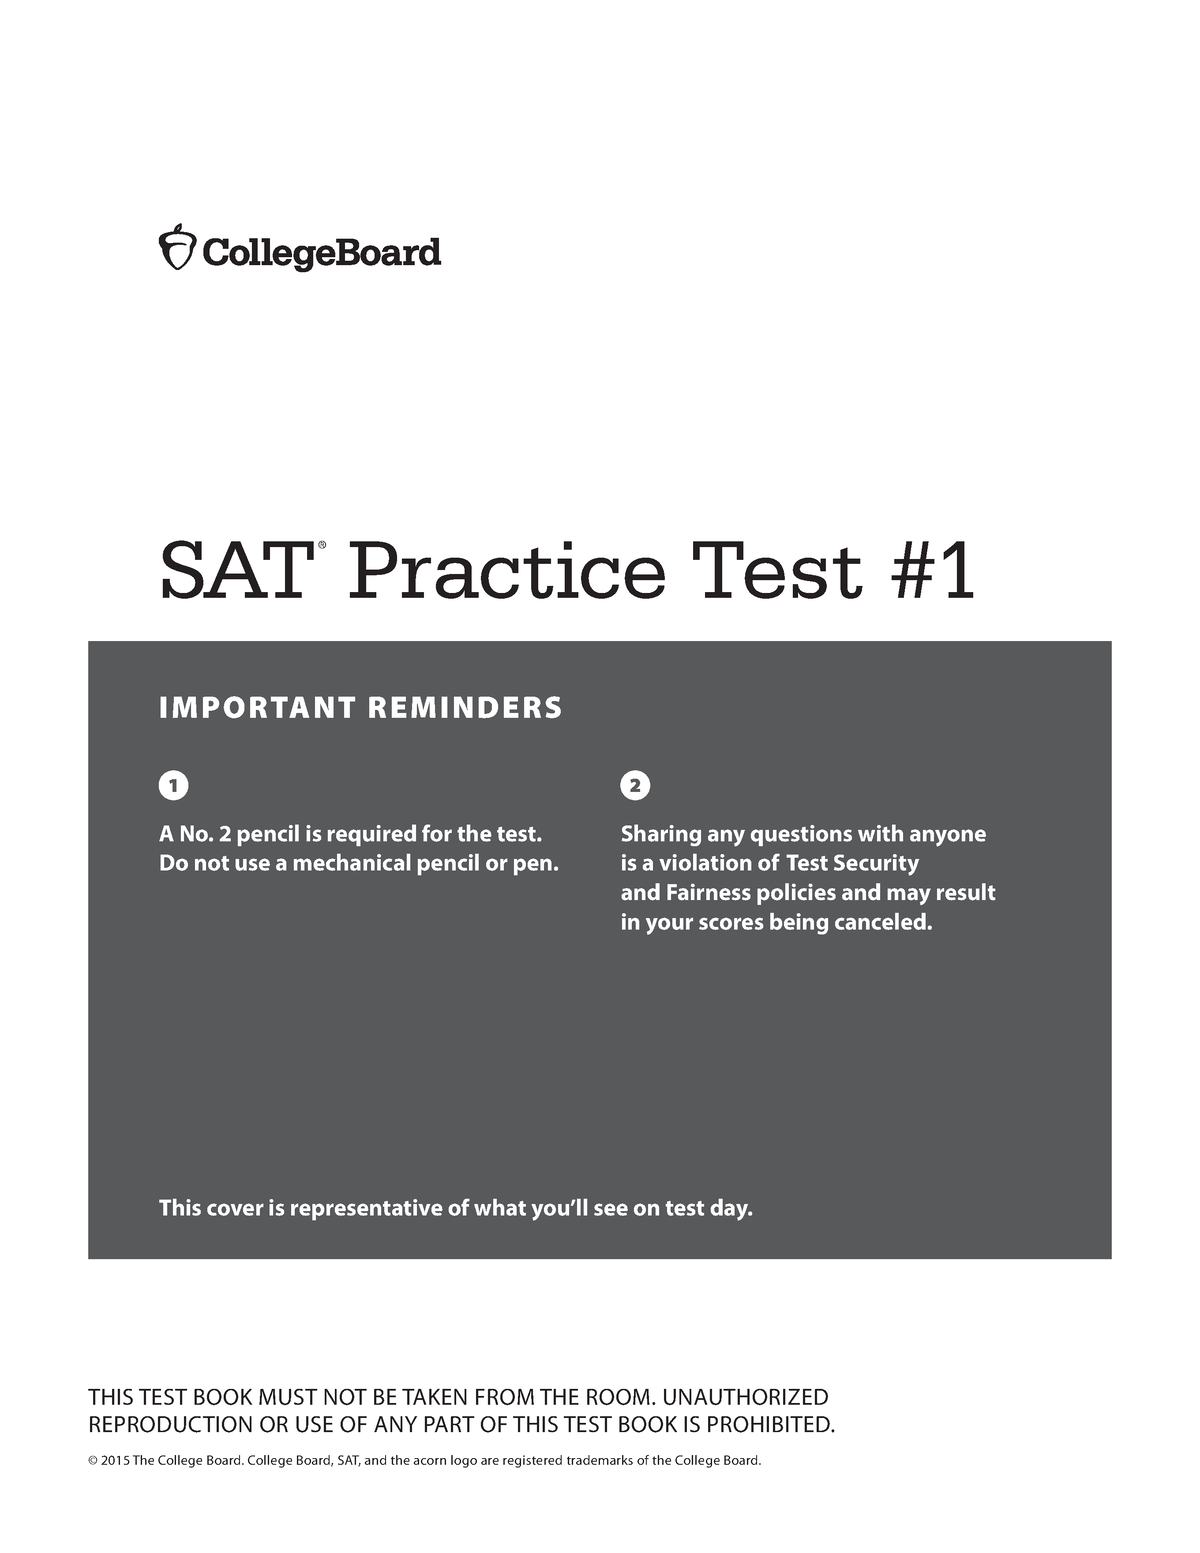 prep-scholar-sat-practice-test-1-important-reminders-sat-practice